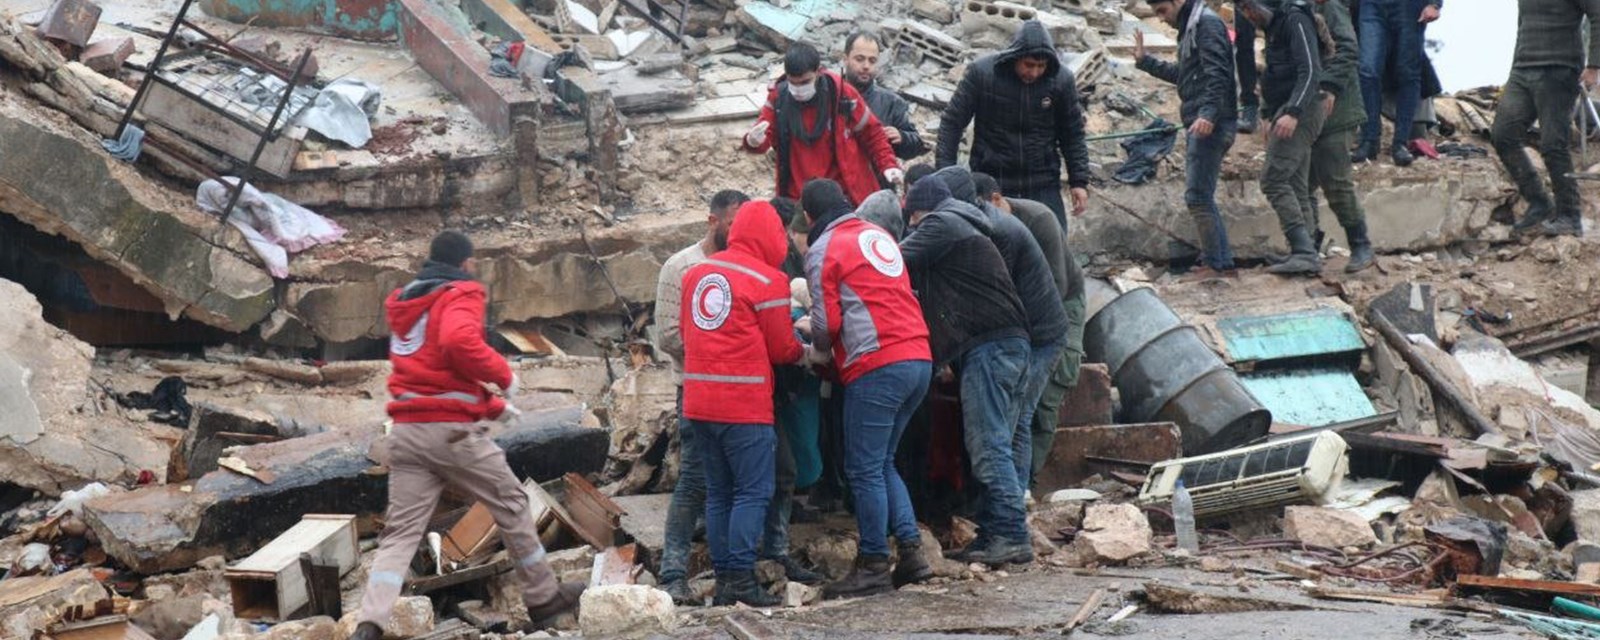 Redningsmanskaper fra Syrisk Røde Halvmåne bærer ut et menneske fra en sammenrast bygning.